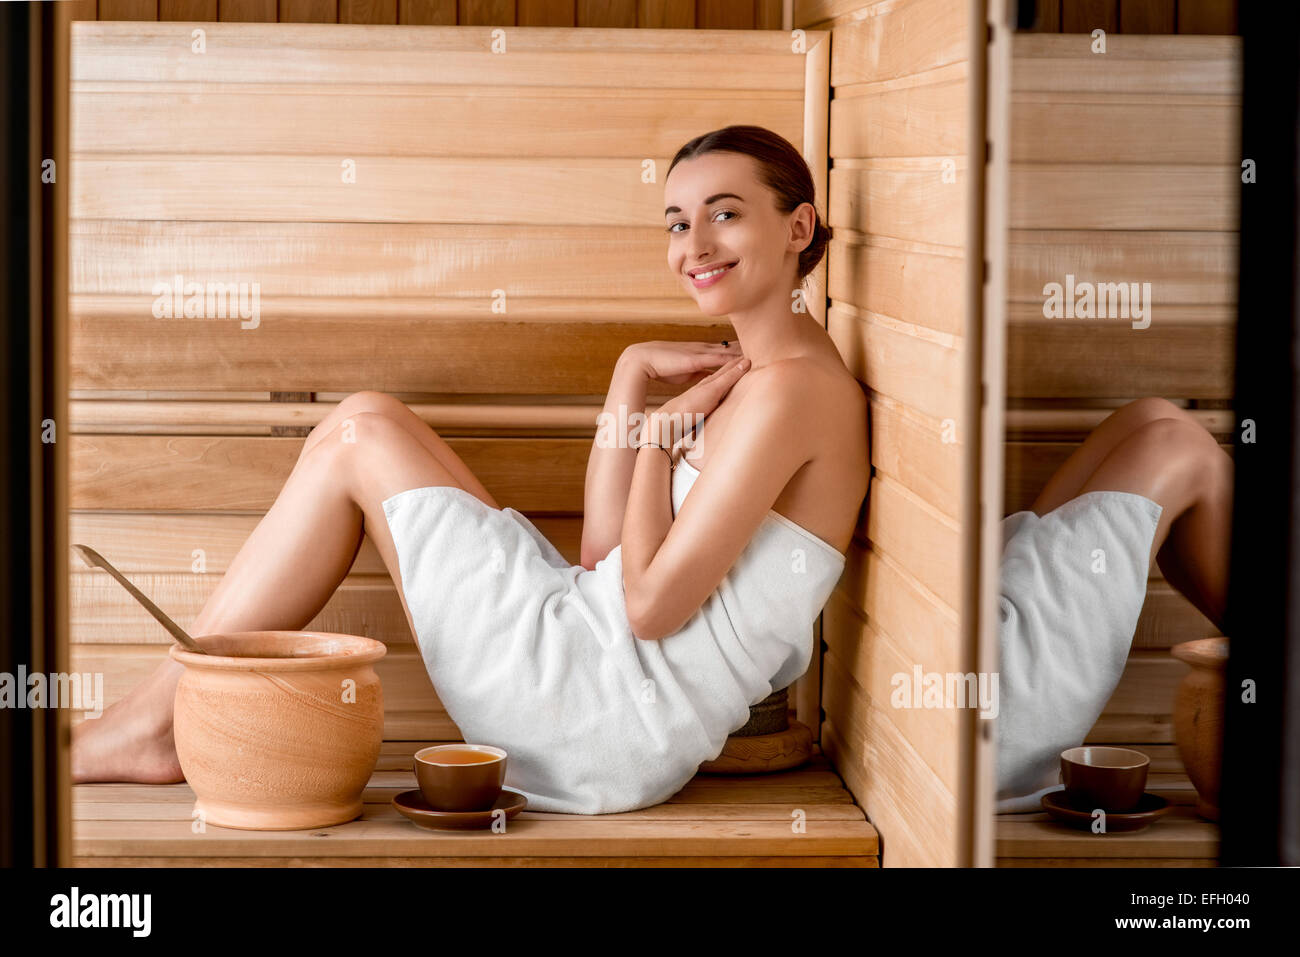 Woman in sauna Stock Photo